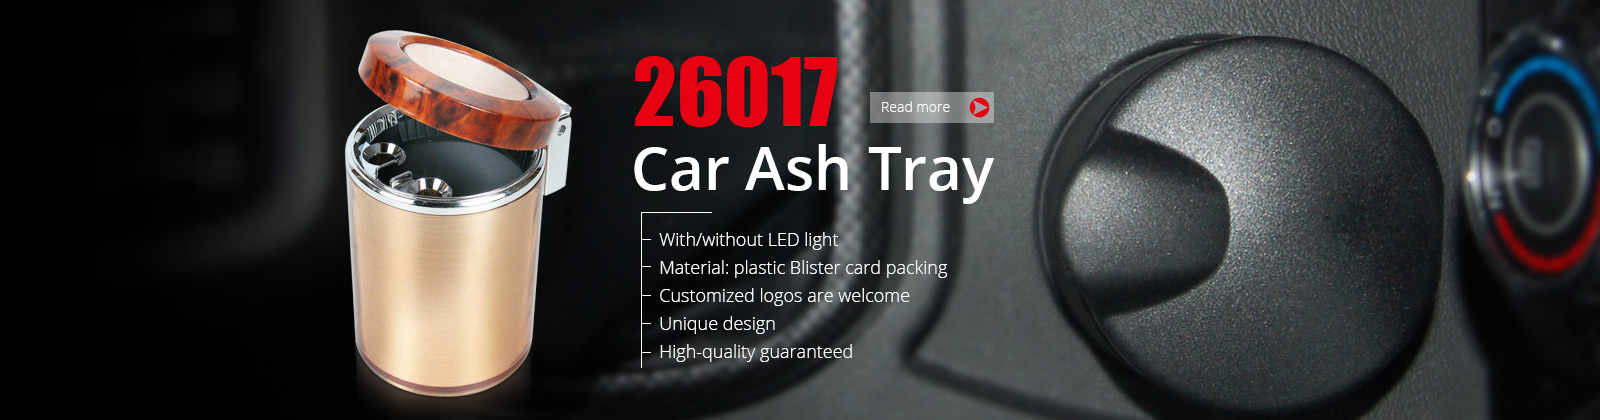 Ash Tray